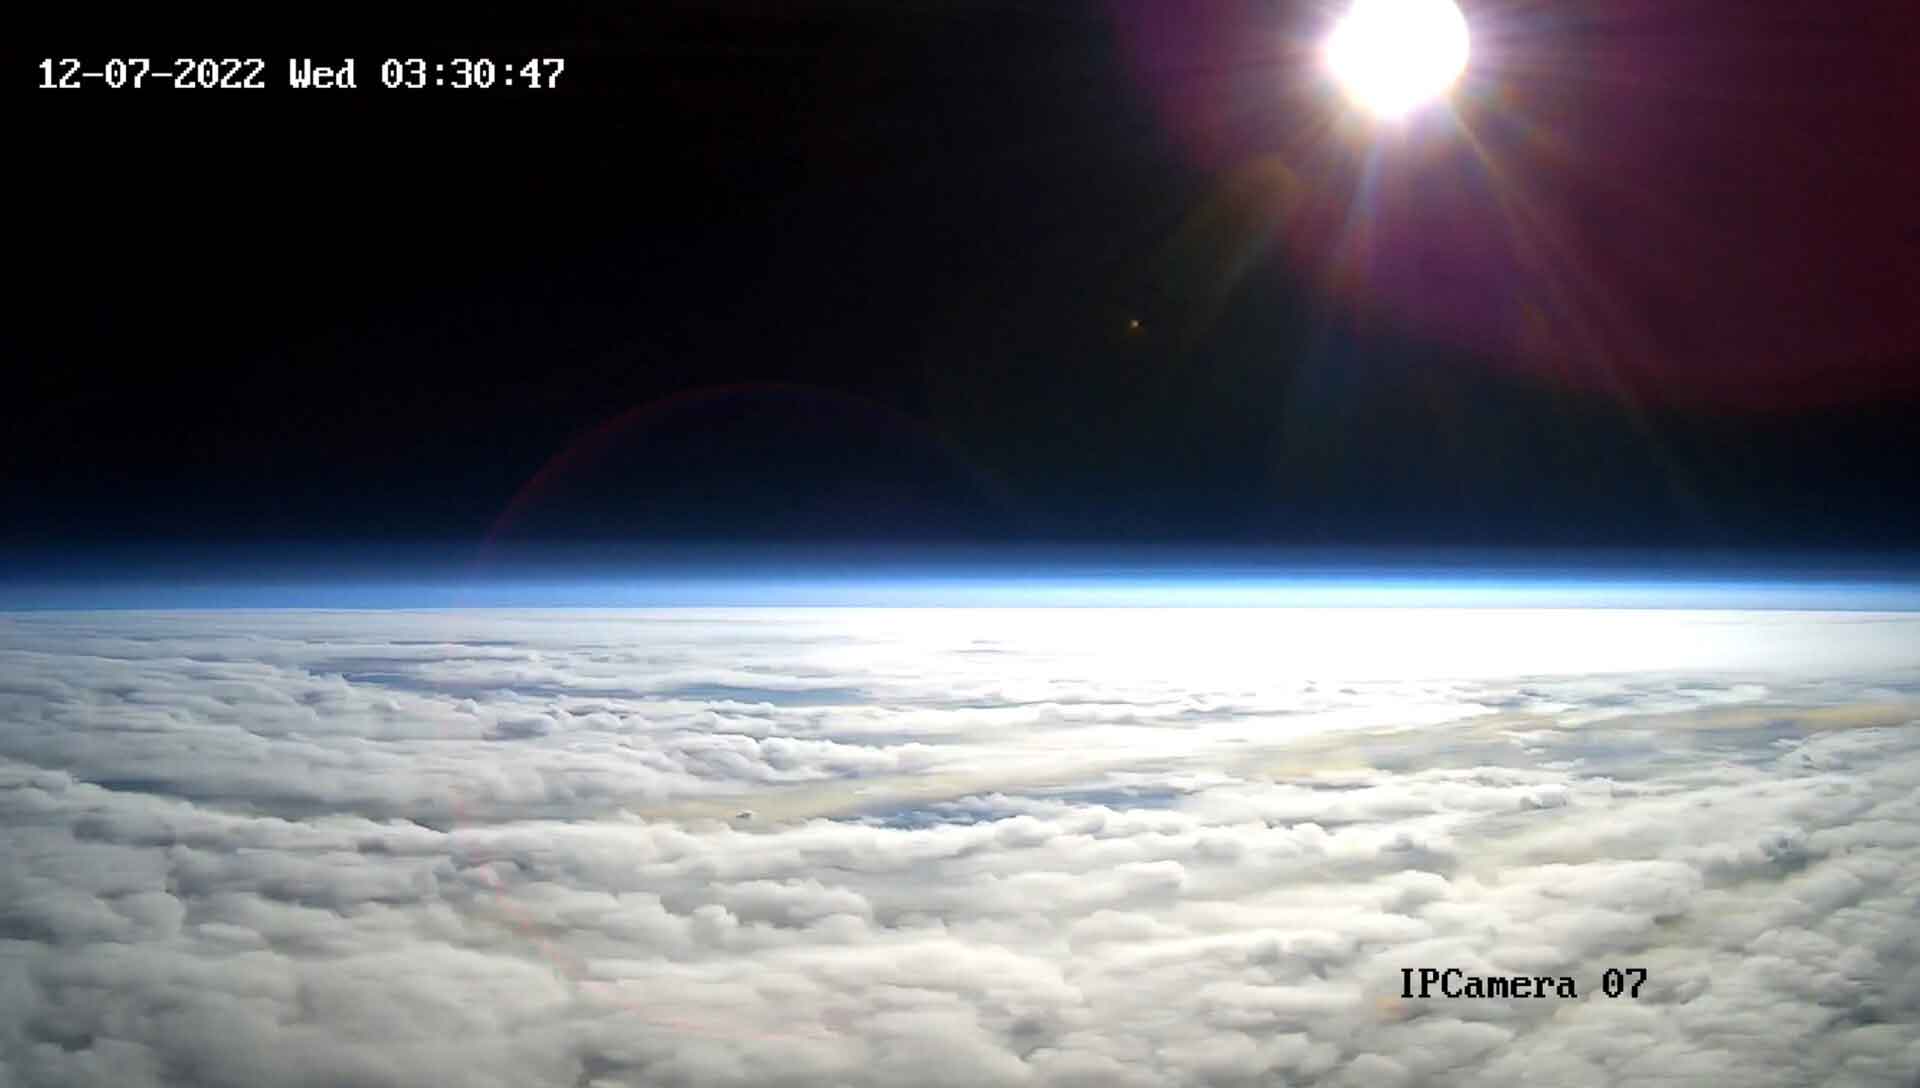 Halo Space réussit son premier vol d’essai dans la stratosphère et son retour sur Terre.